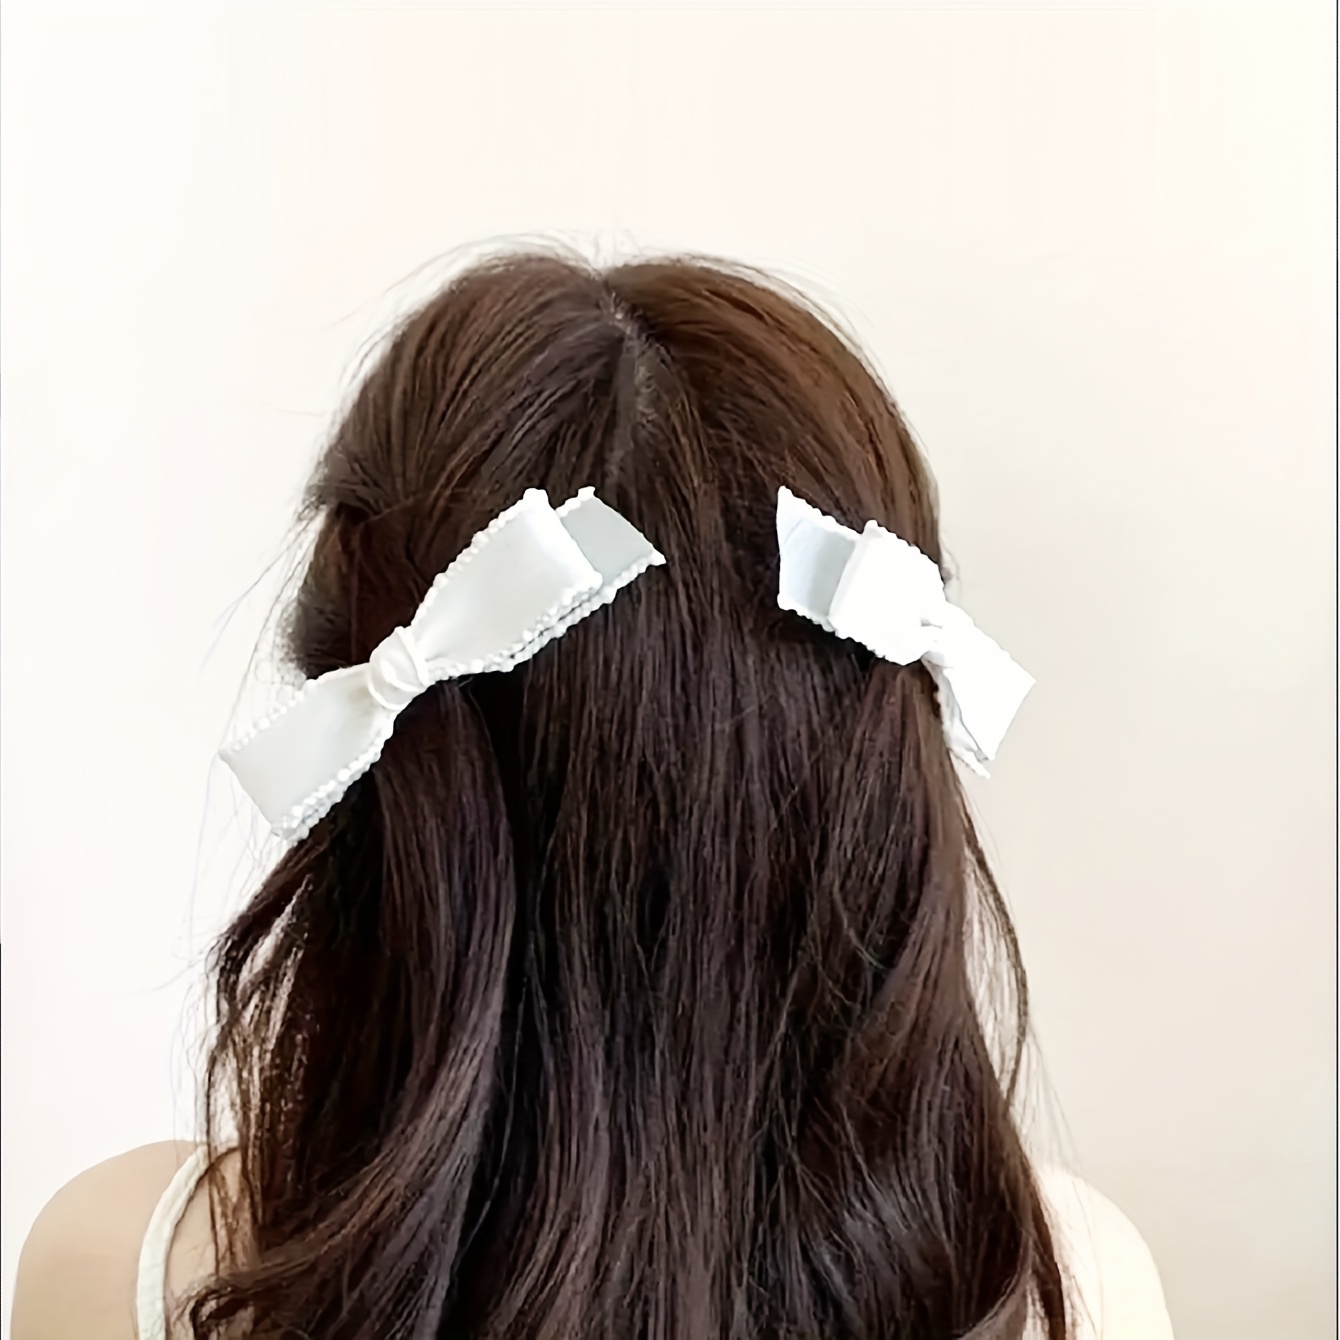 White Simple Ribbon Bow Hair Clip Hairpin Hair Accessories - Temu